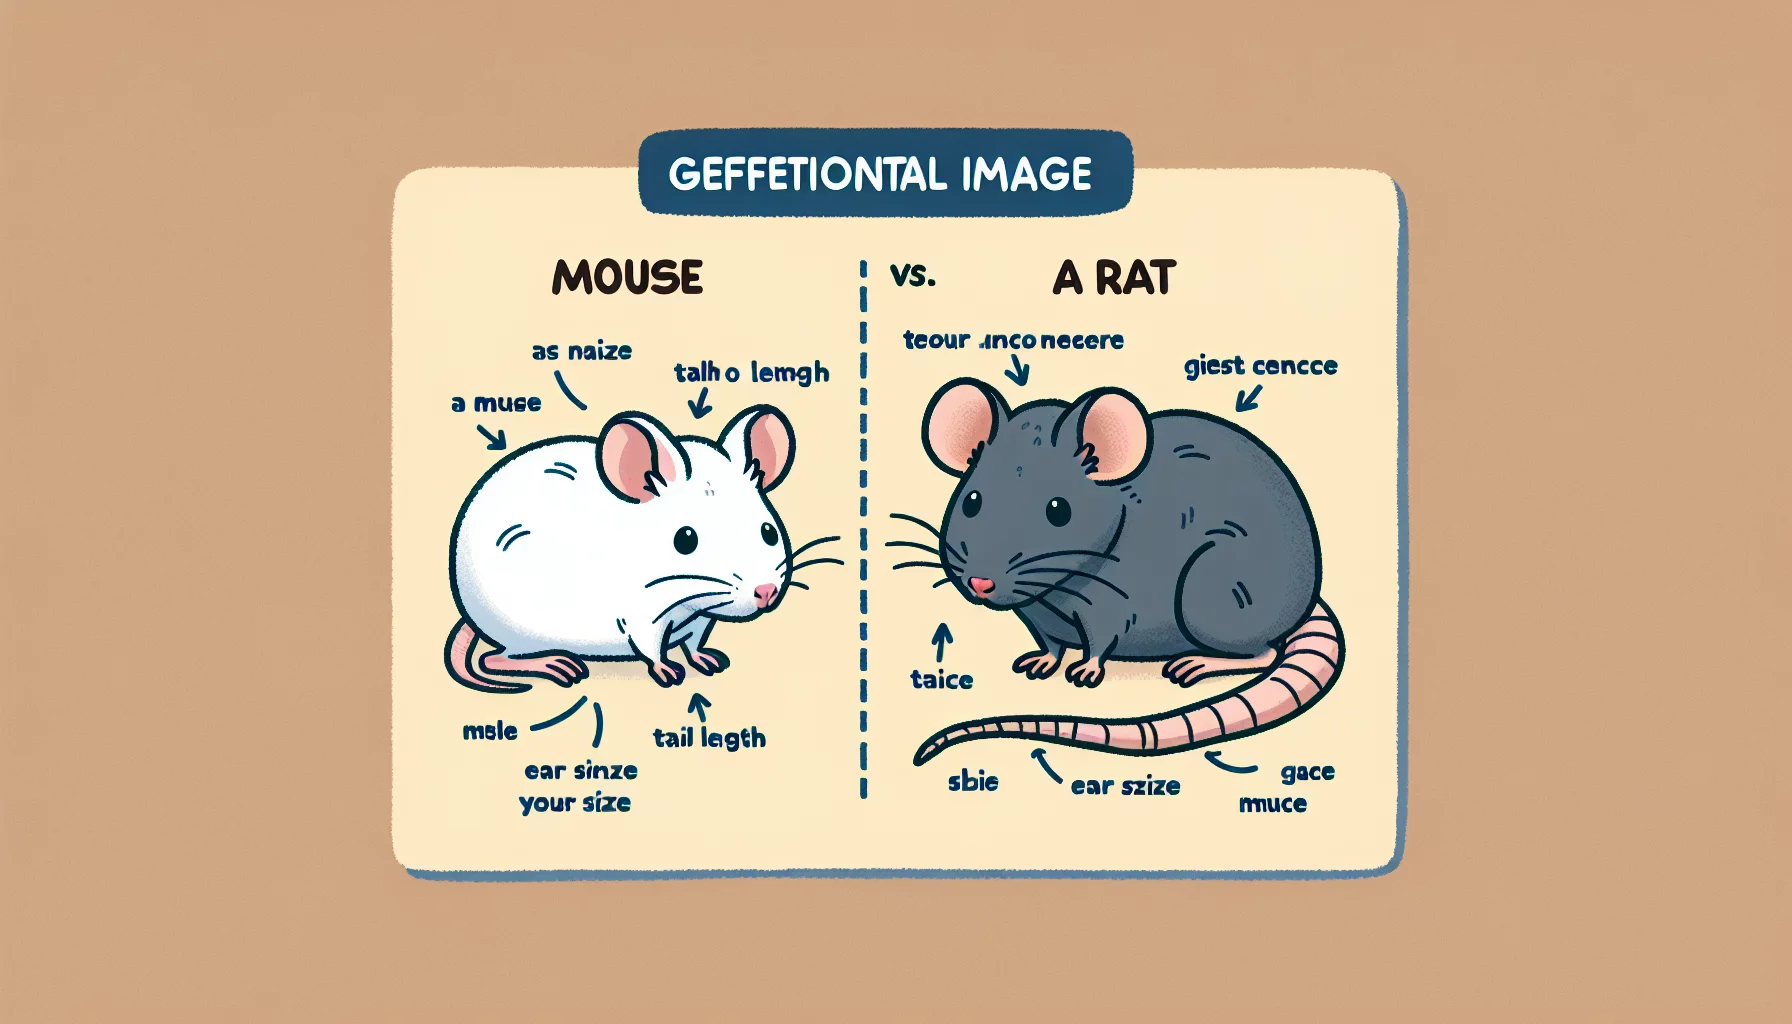 Quelle est la différence entre une souris et un rat ?